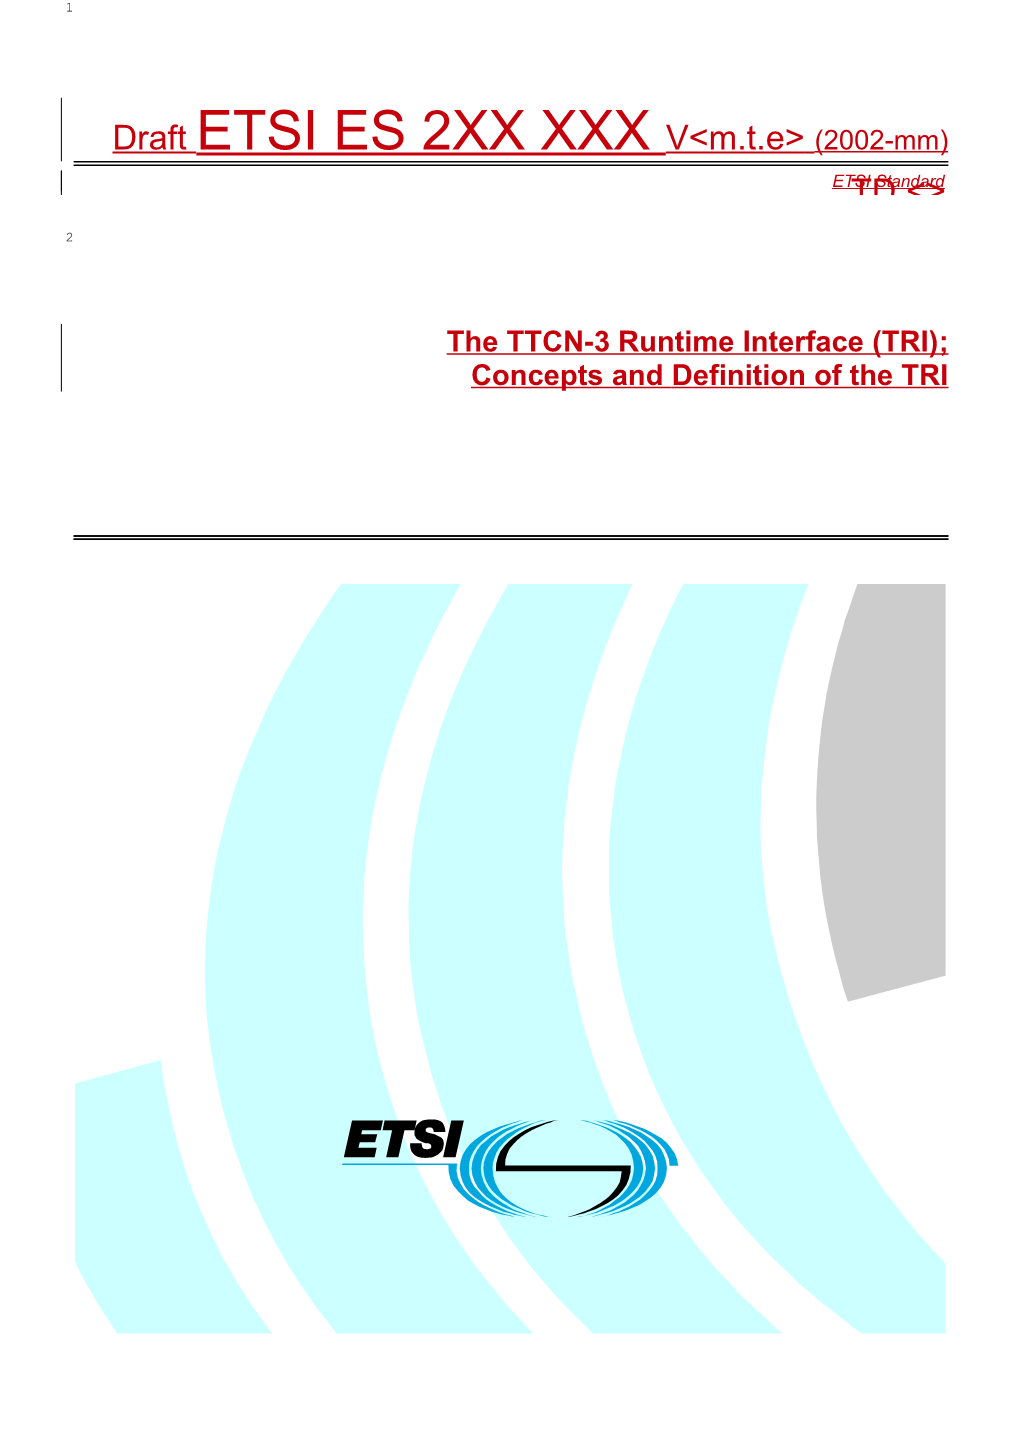 The TTCN-3 Runtime Interface